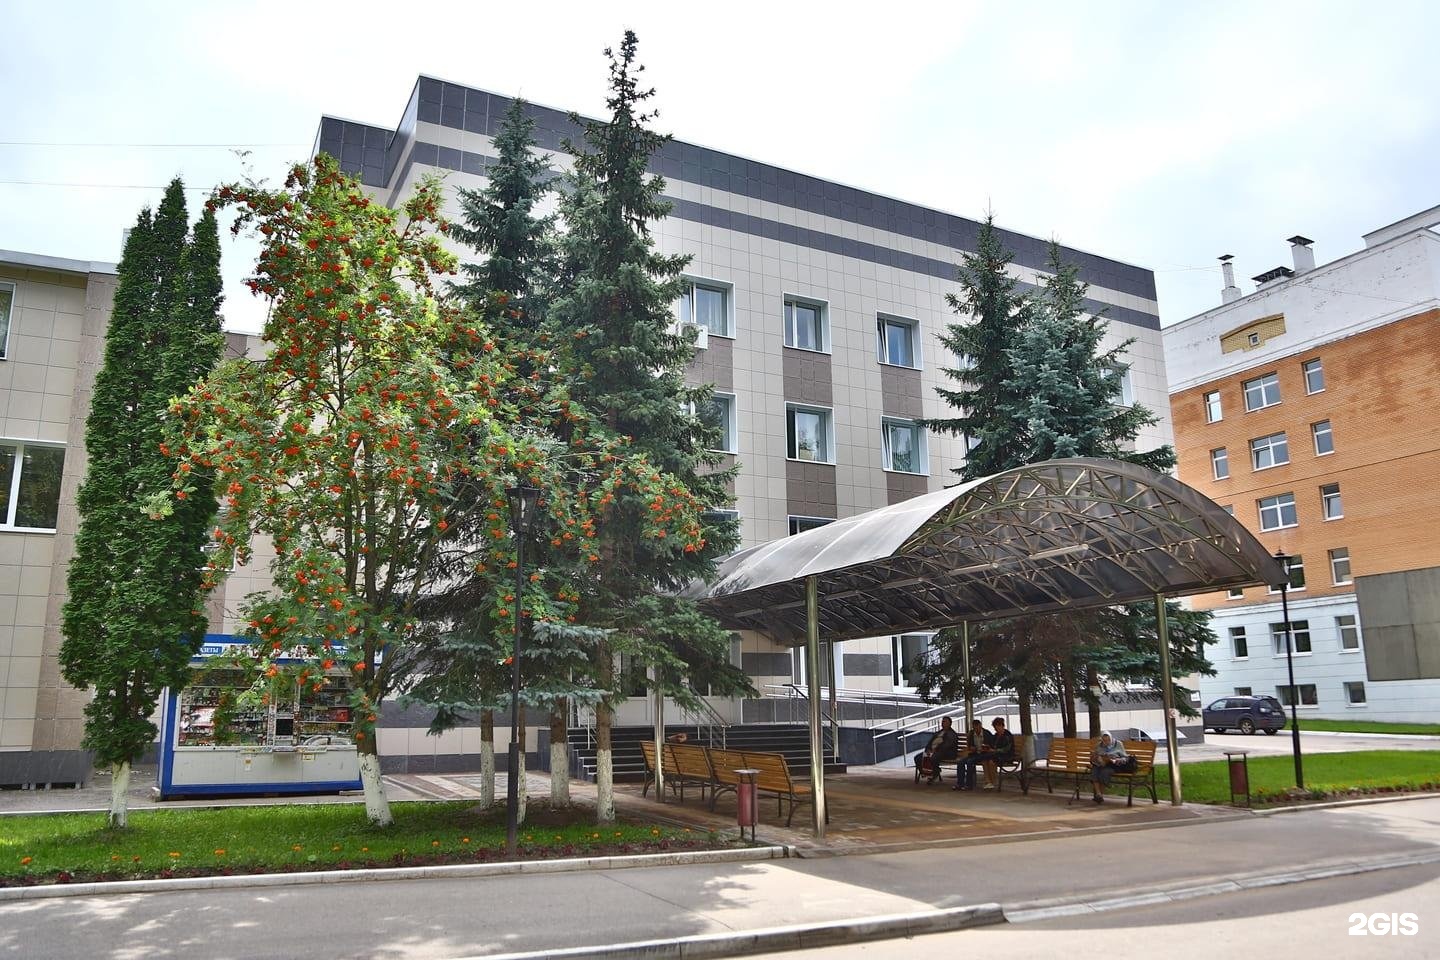 Областная больница вишневского